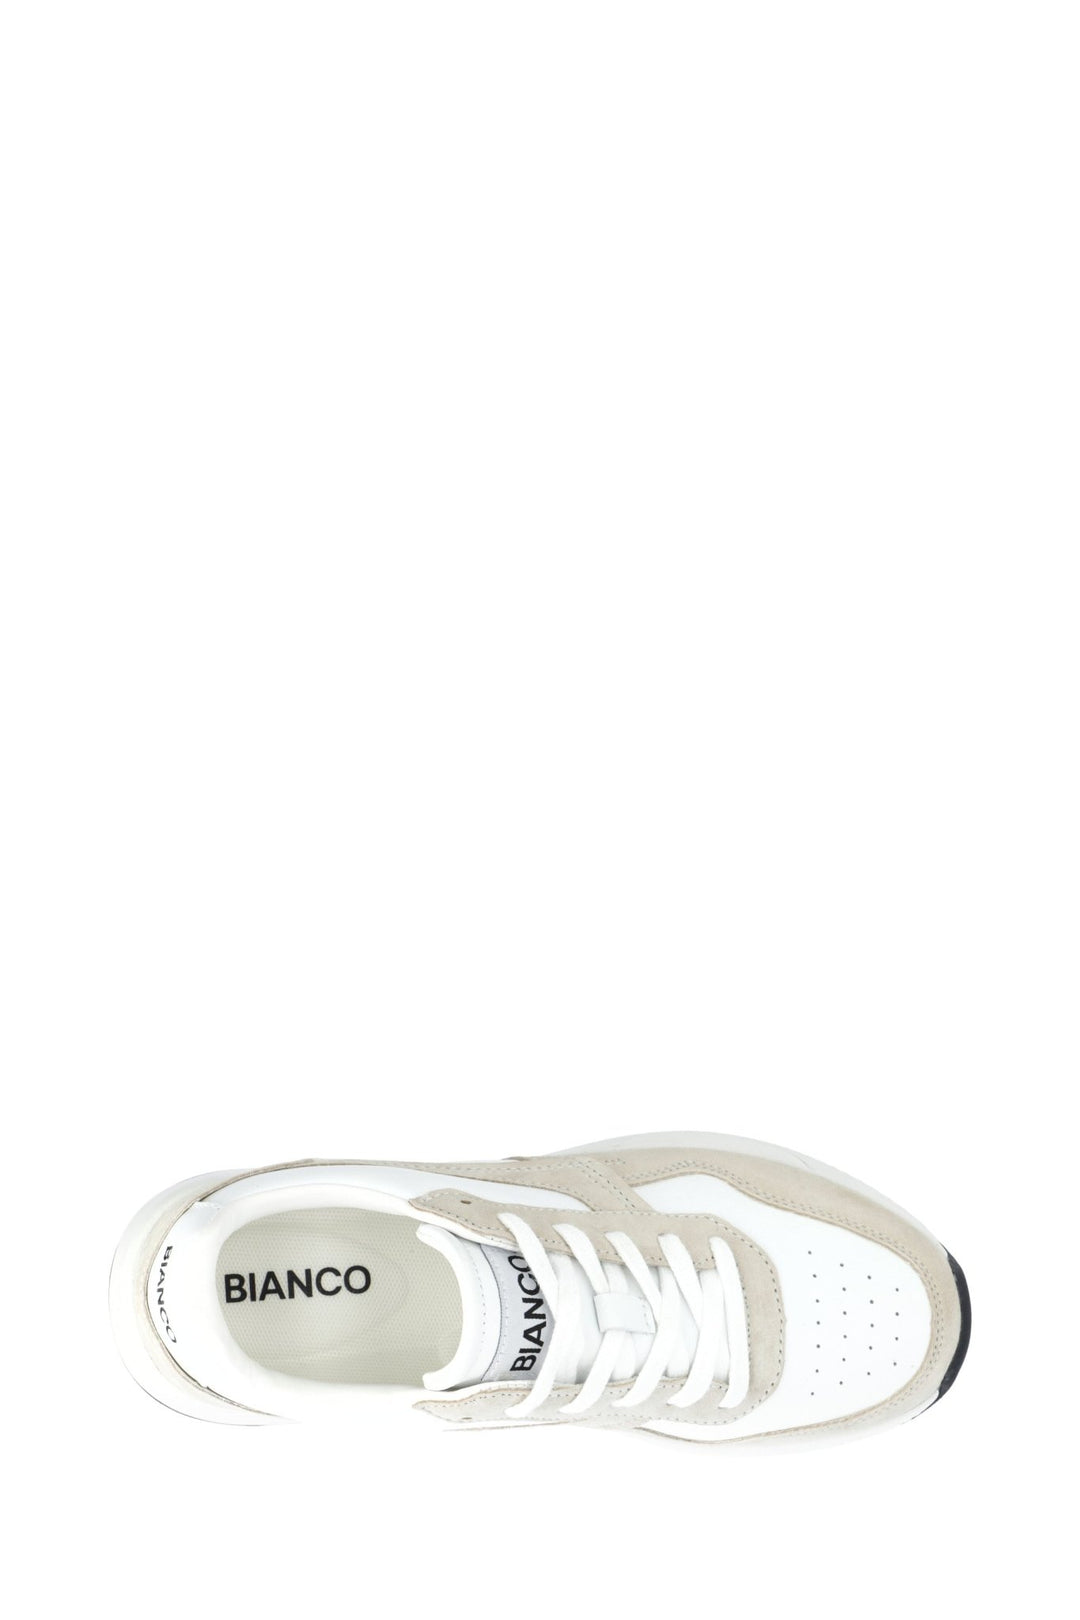 Bialucy Sneakers White | Sko | Smuk - Dameklær på nett